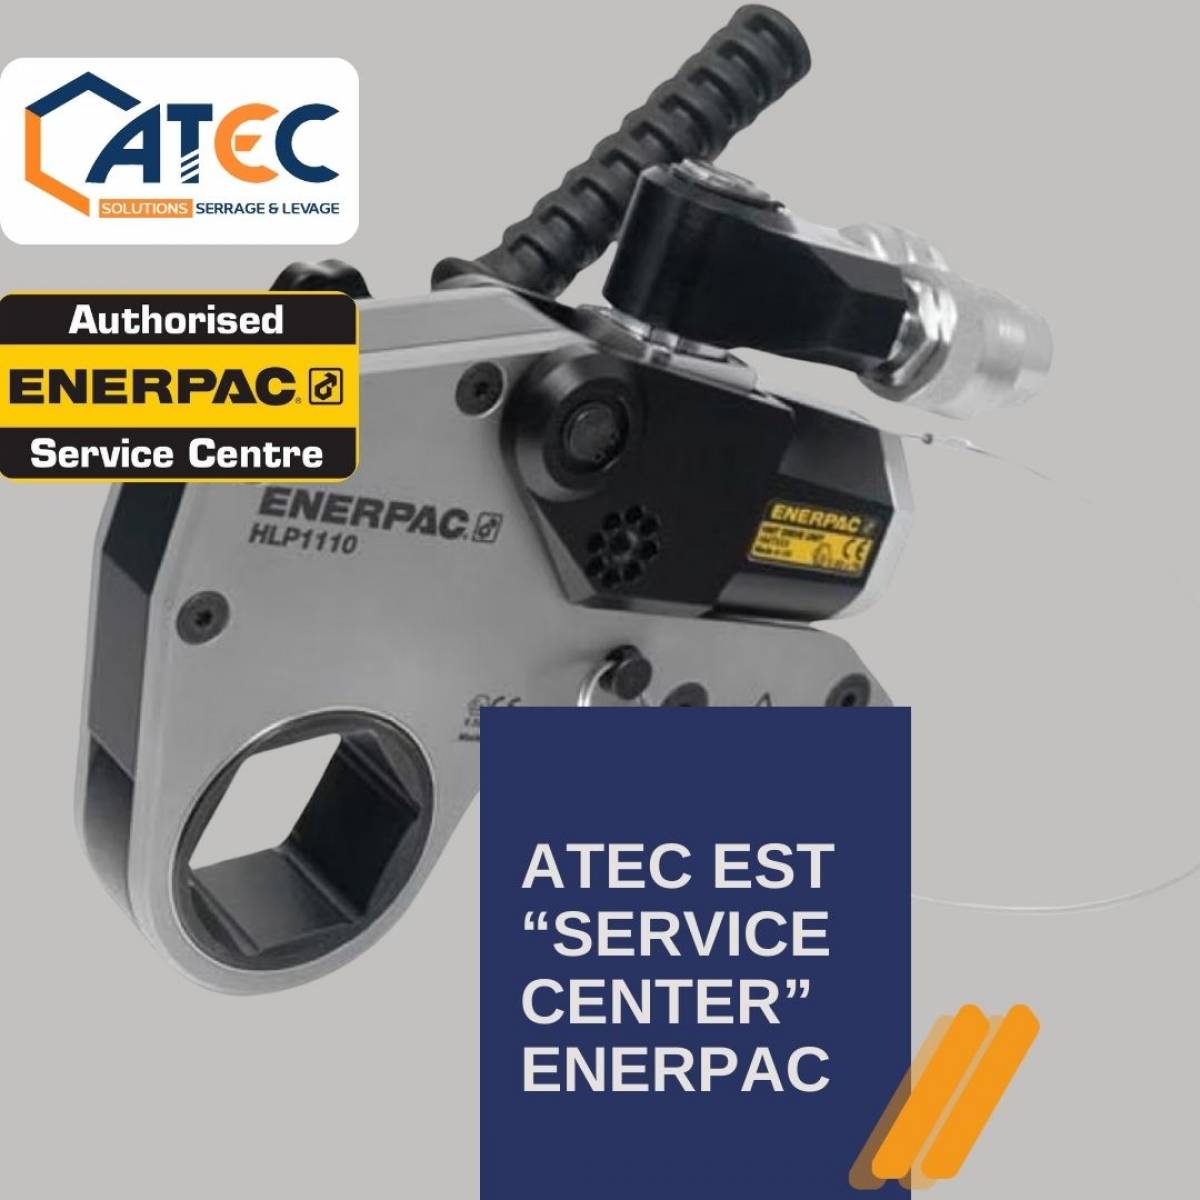 ATEC - ENERPAC